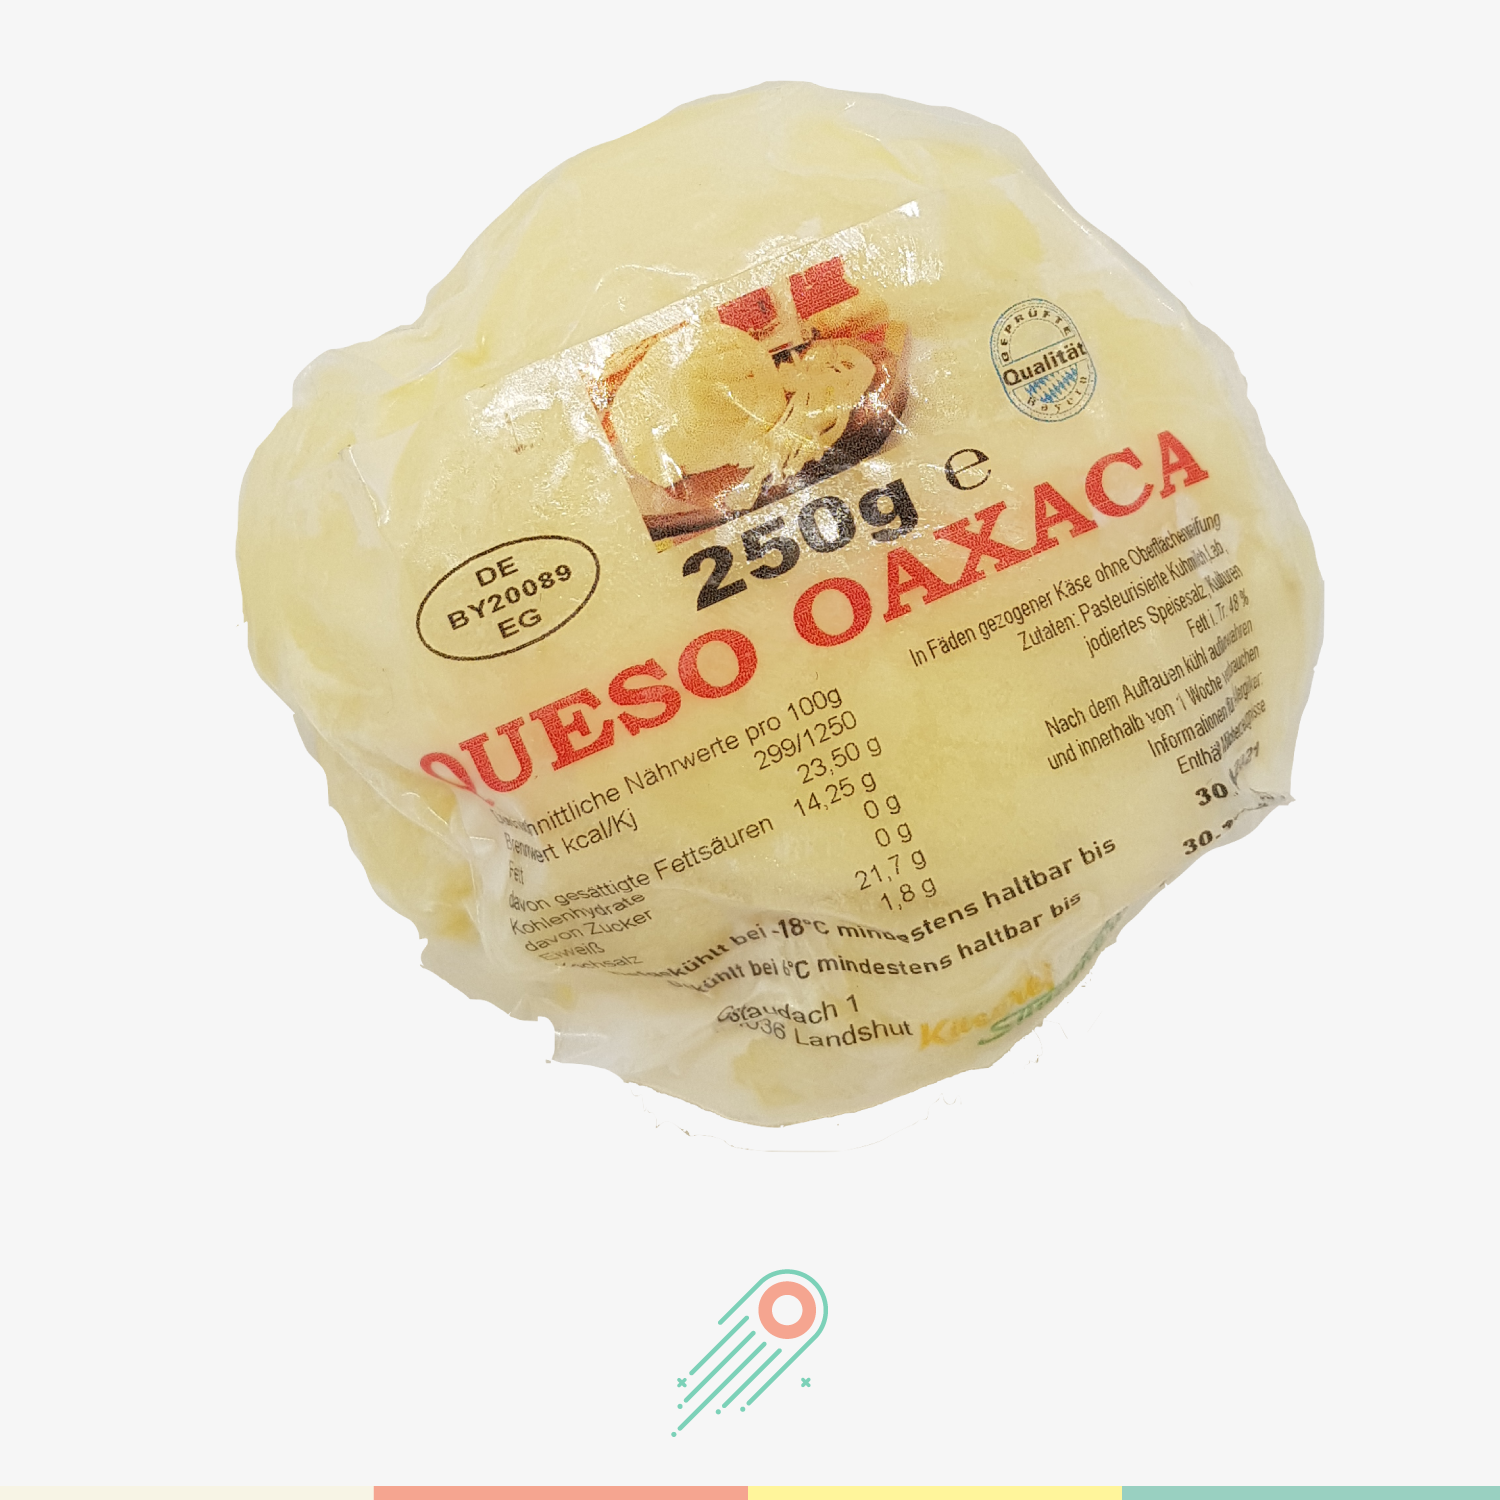 Queso Oaxaca 250 gr